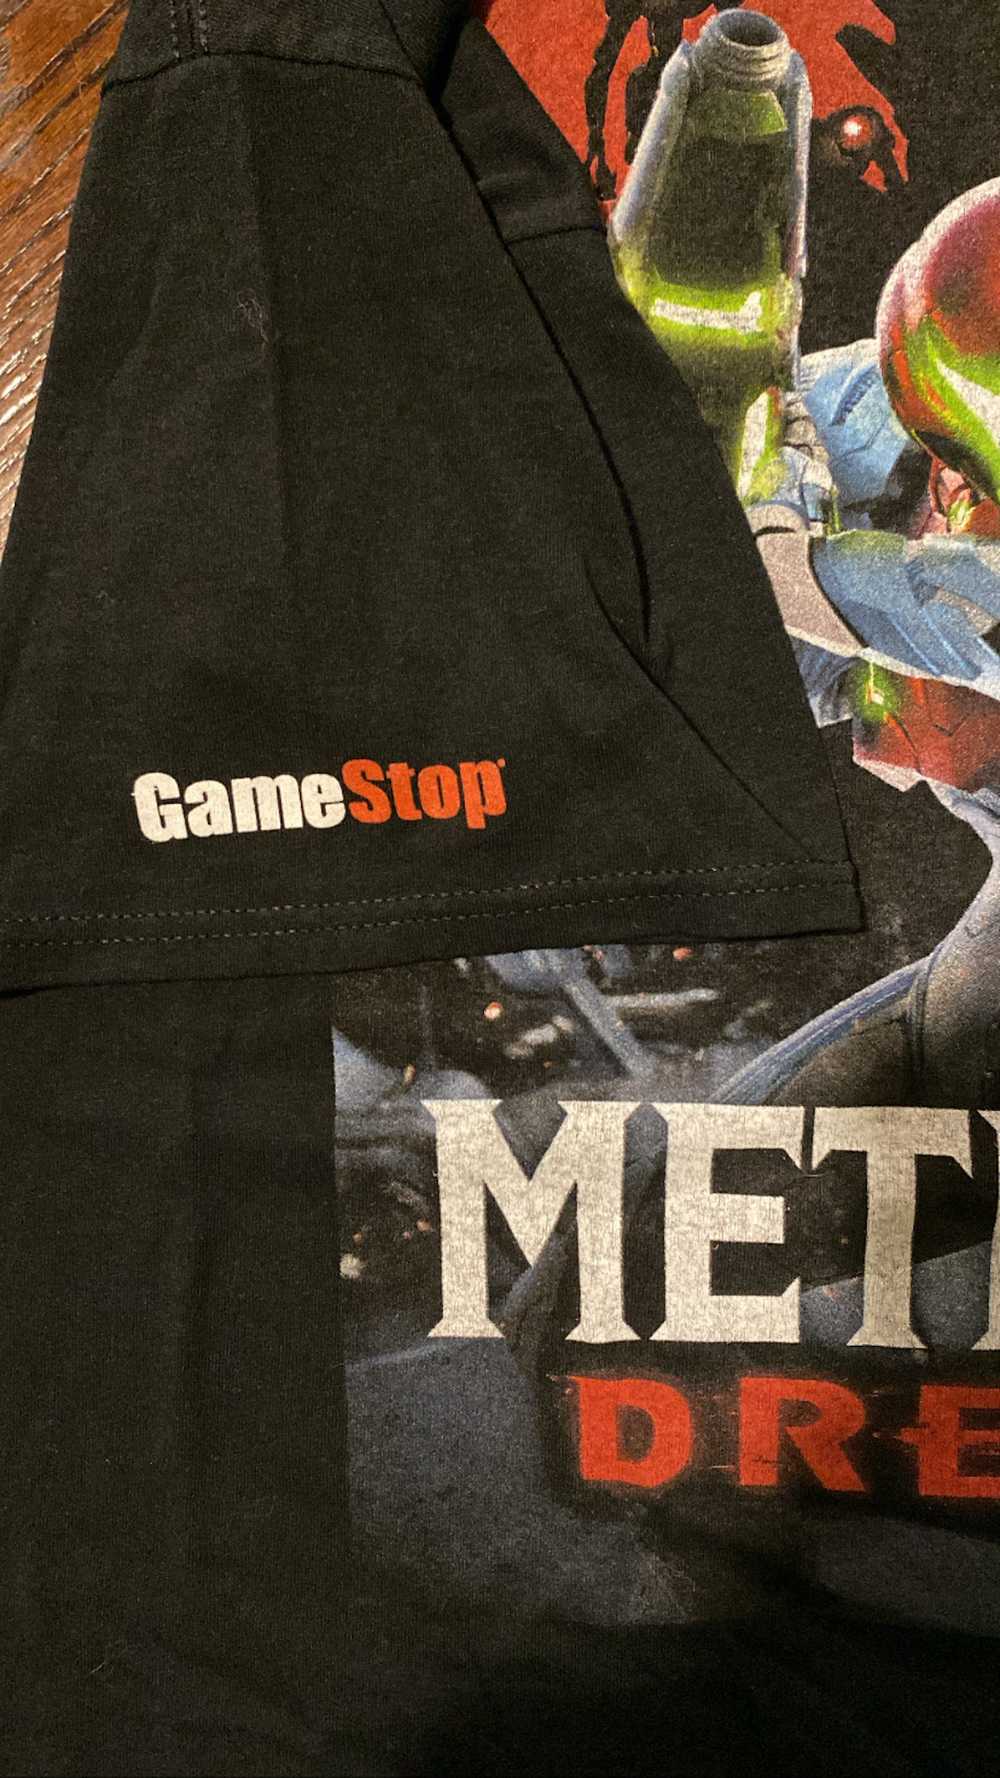 Nintendo Metroid Dredd GameStop Promo Large - image 2